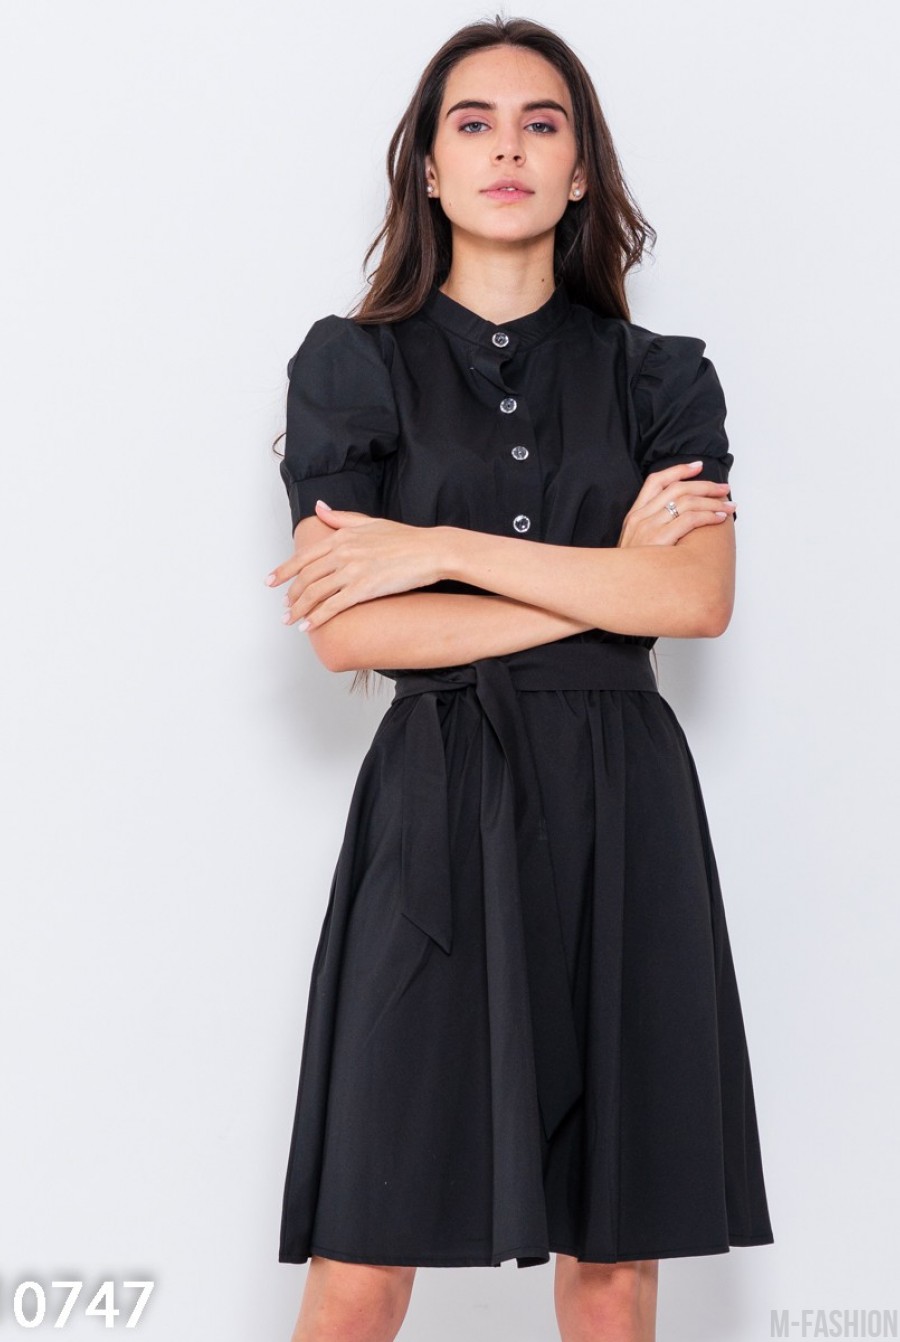 Черное офисное платье с короткими рукавами - Фото 1